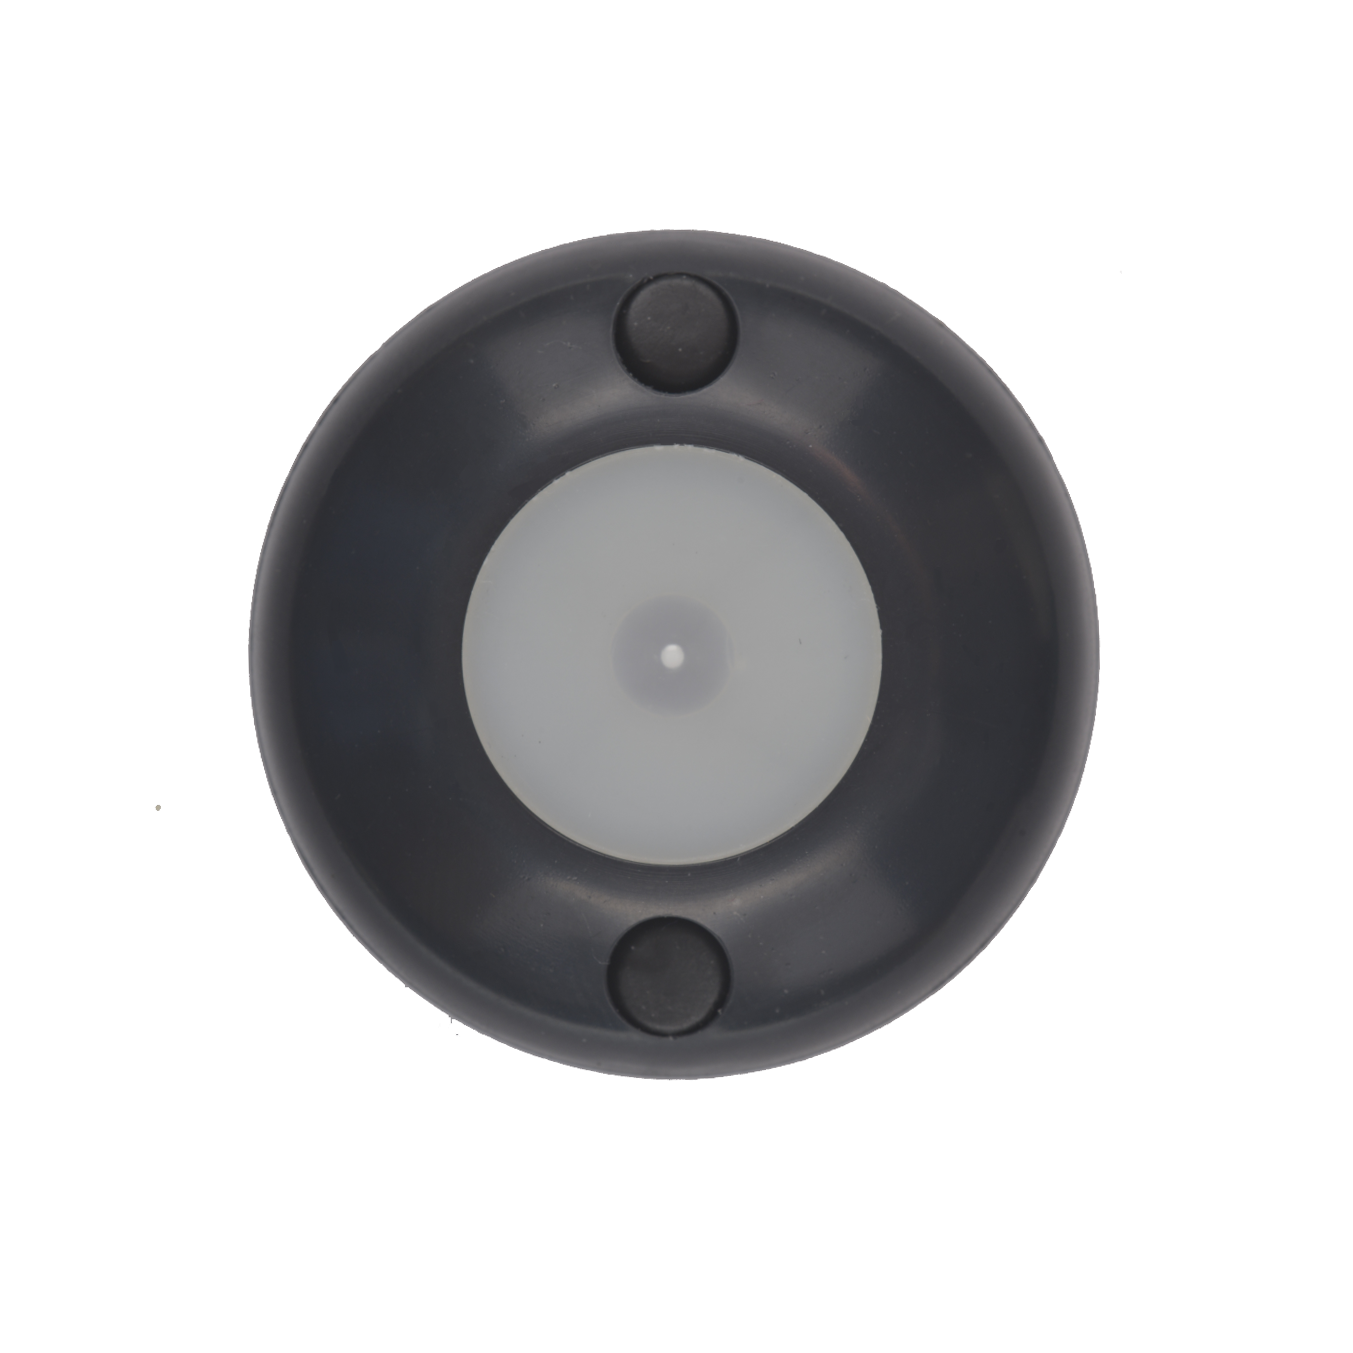 Герч-ZN - износостойкая сенсорная кнопка выхода с приятной подсветкой